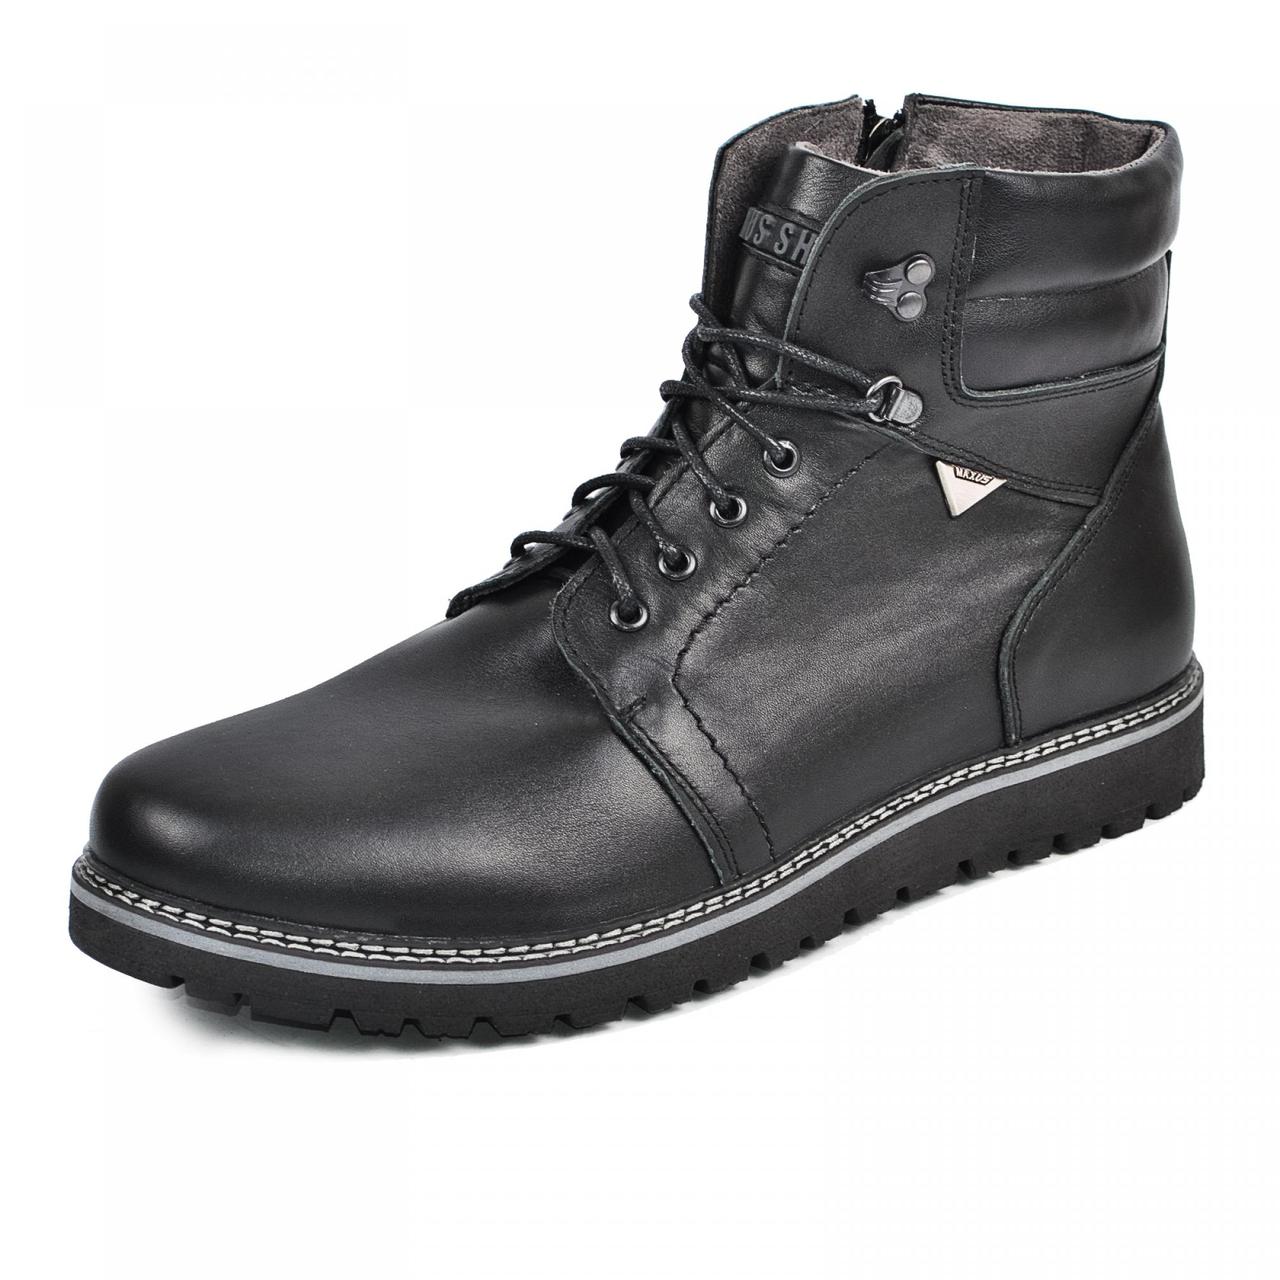 Розміри 46, 47, 48  Чоловічі зимові комфортні шкіряні чоботи на хутрі, чорні  Maxus 2084